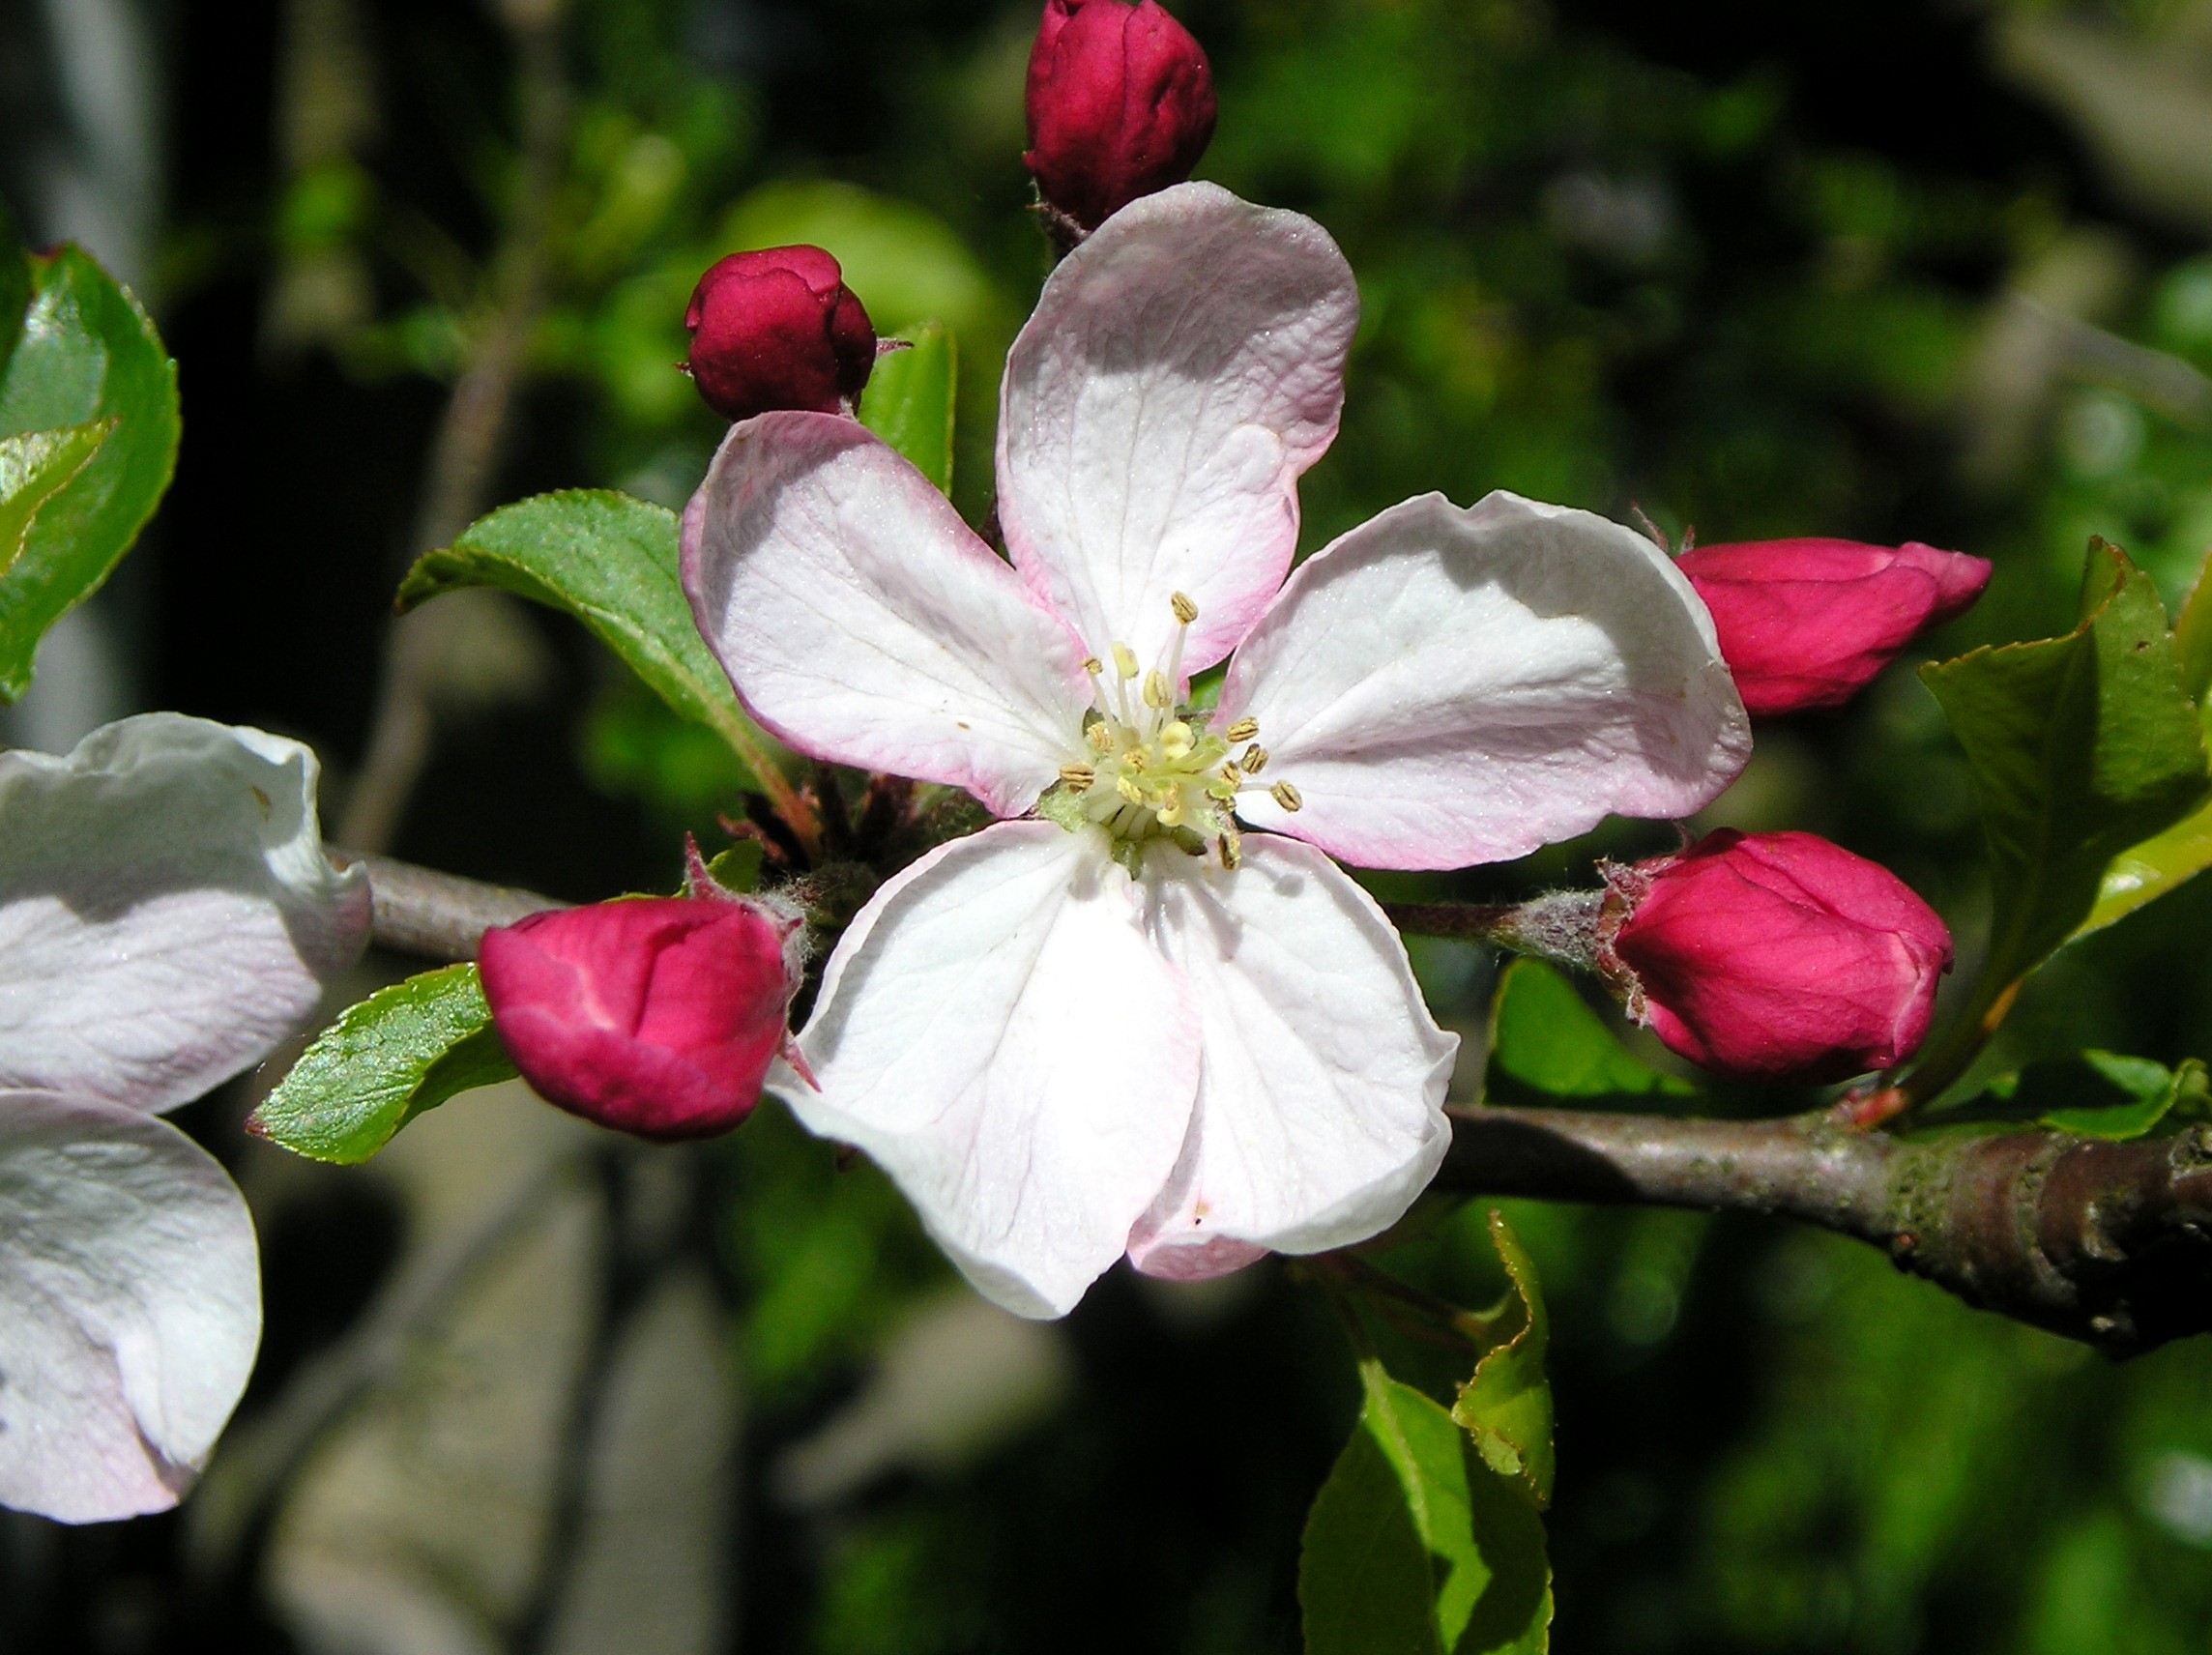 Obstbaumblüte_Apfel Rewena.JPG